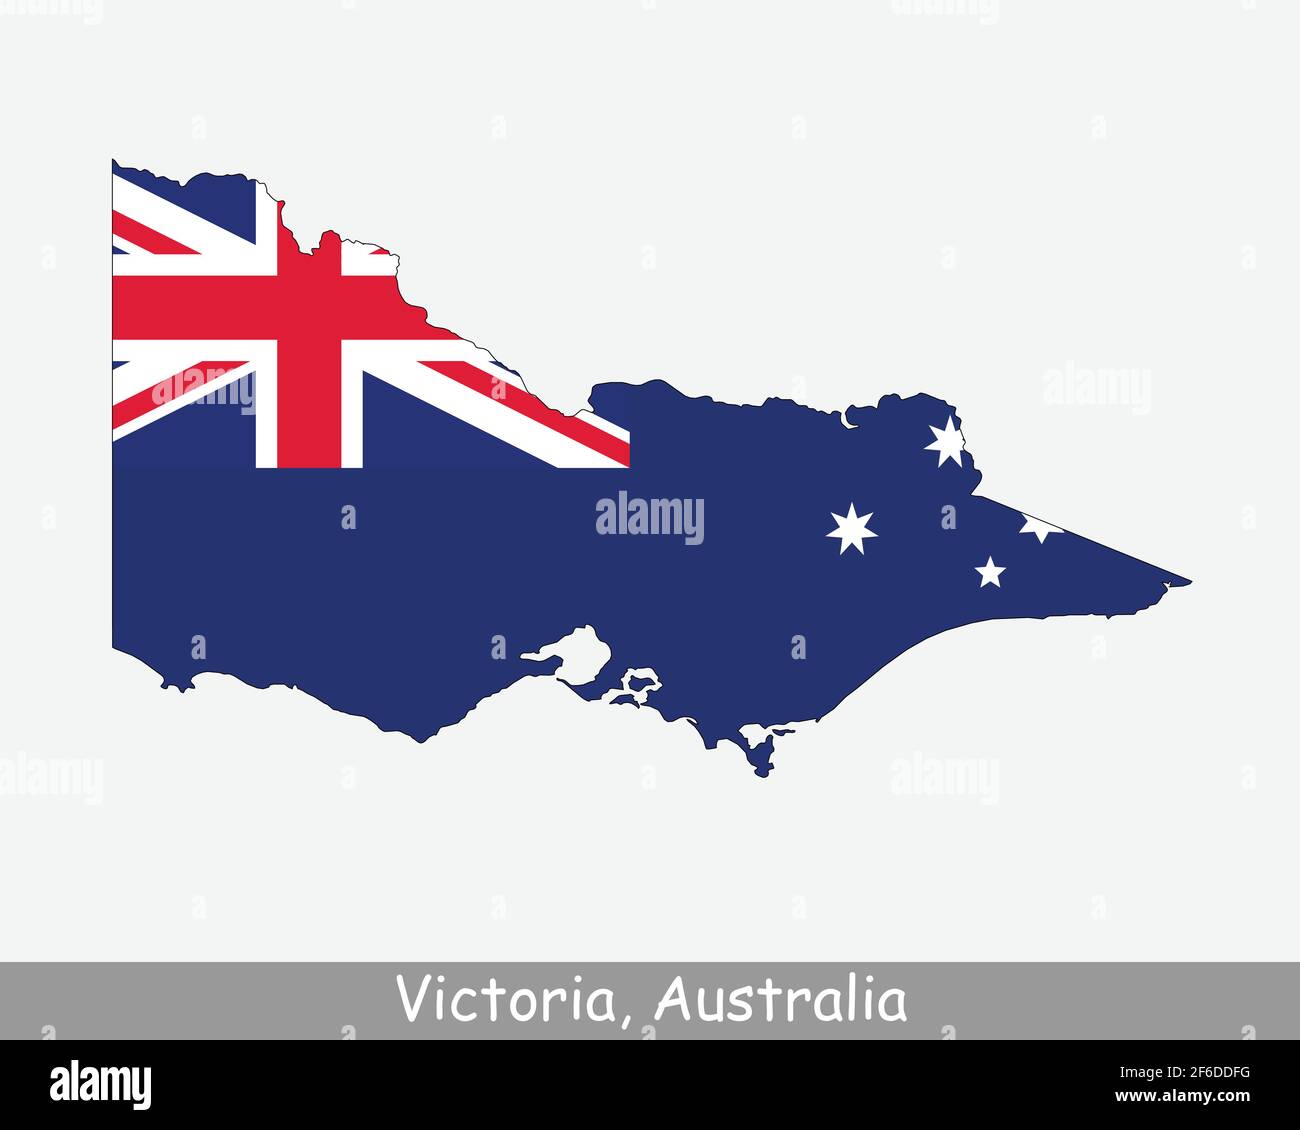 Victoria Karte Flagge. Karte von Vic, Australien mit isolierter Staatsflagge auf weißem Hintergrund. Australischer Staat. Vektorgrafik. Stock Vektor